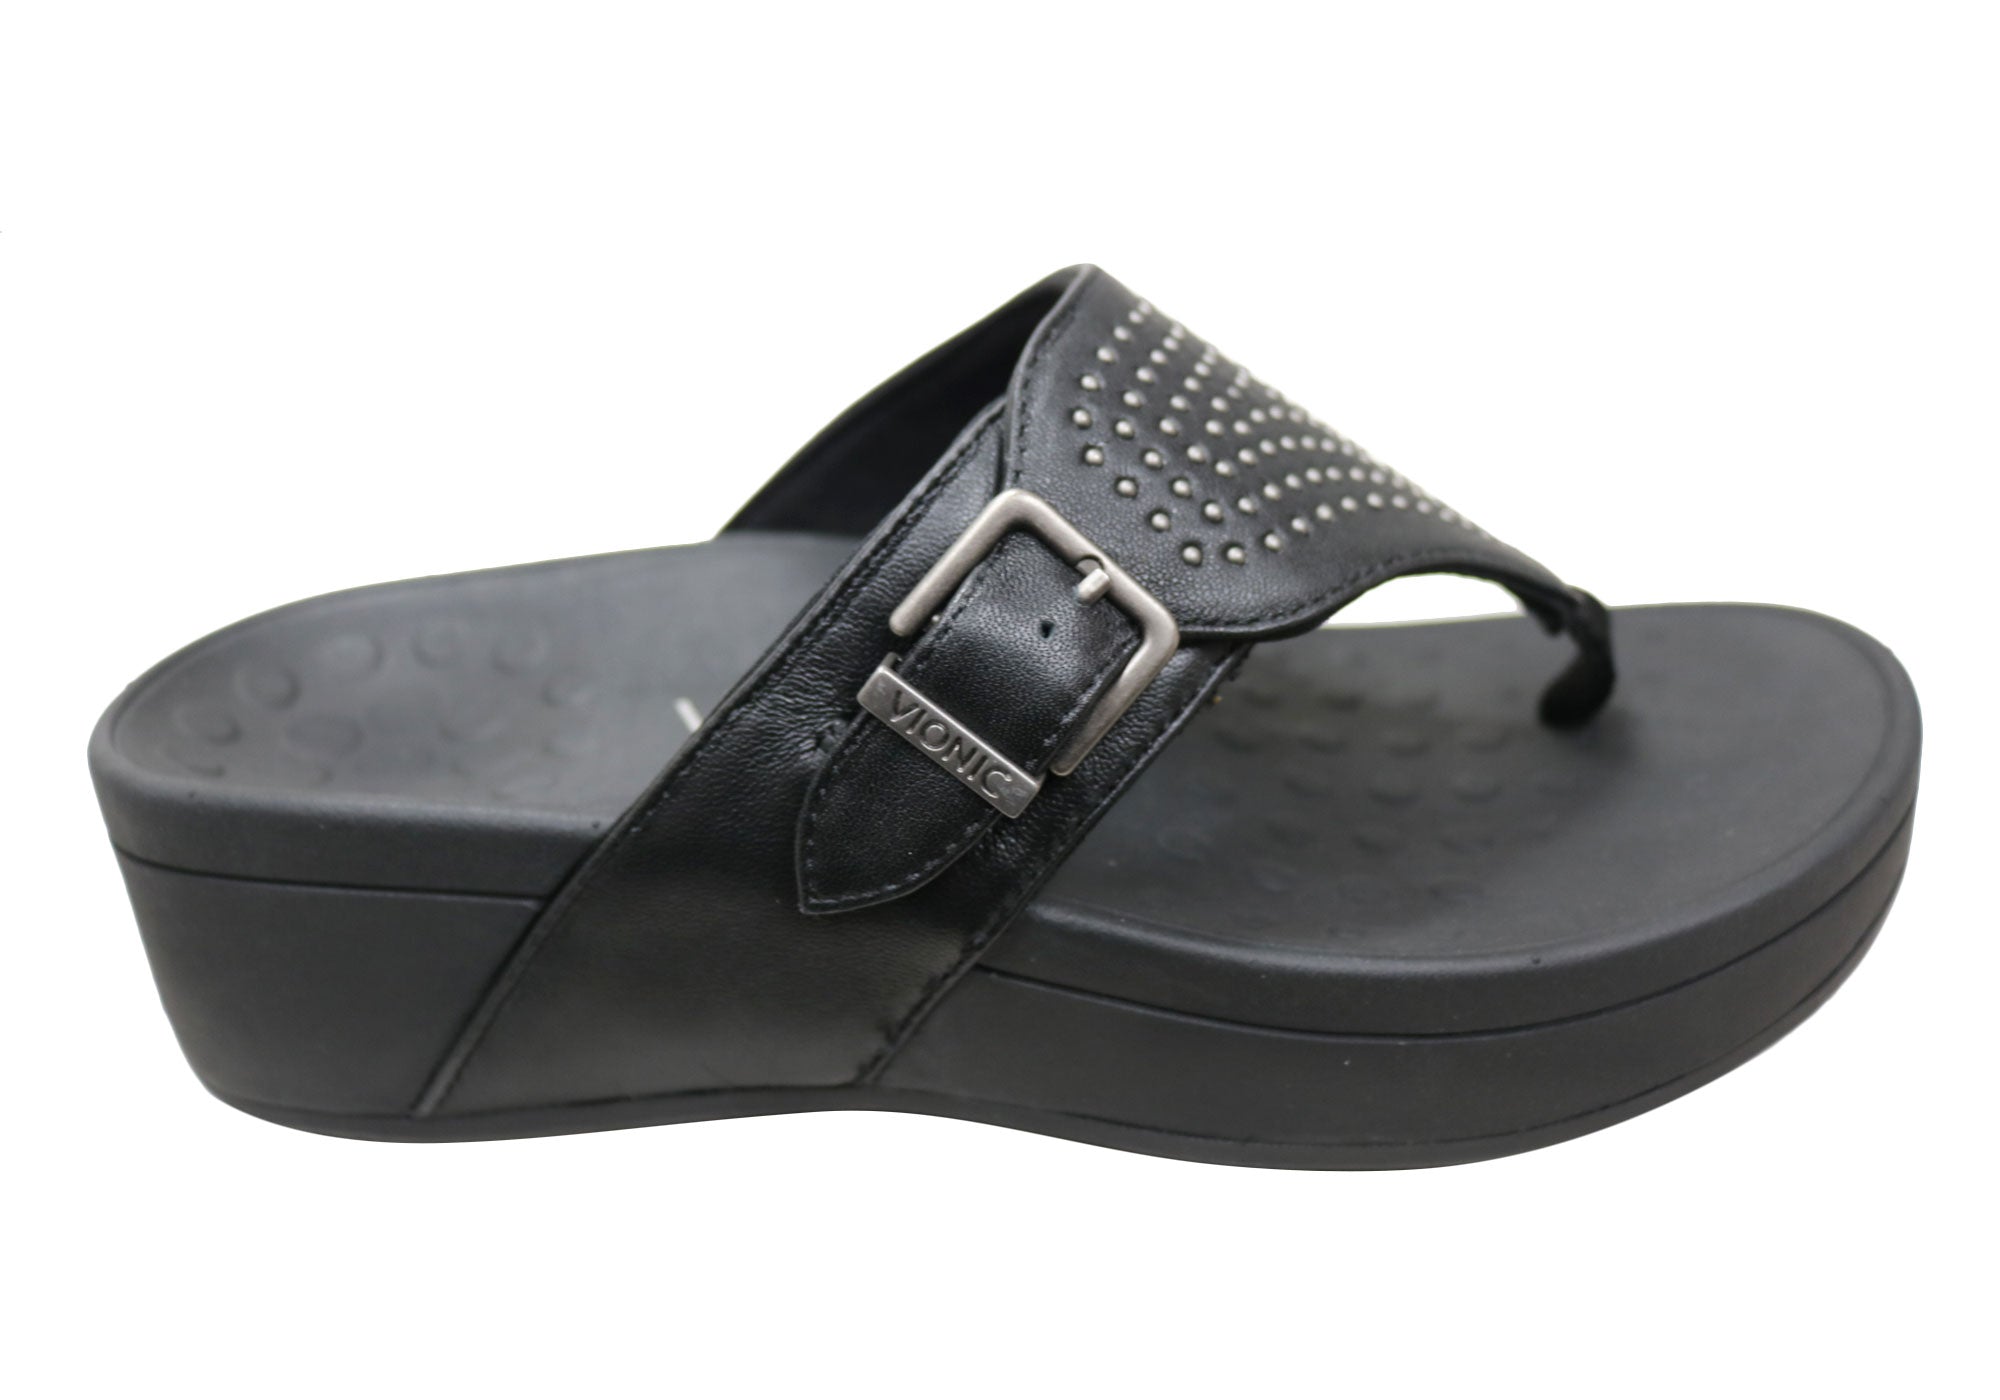 black comfort platform sandals